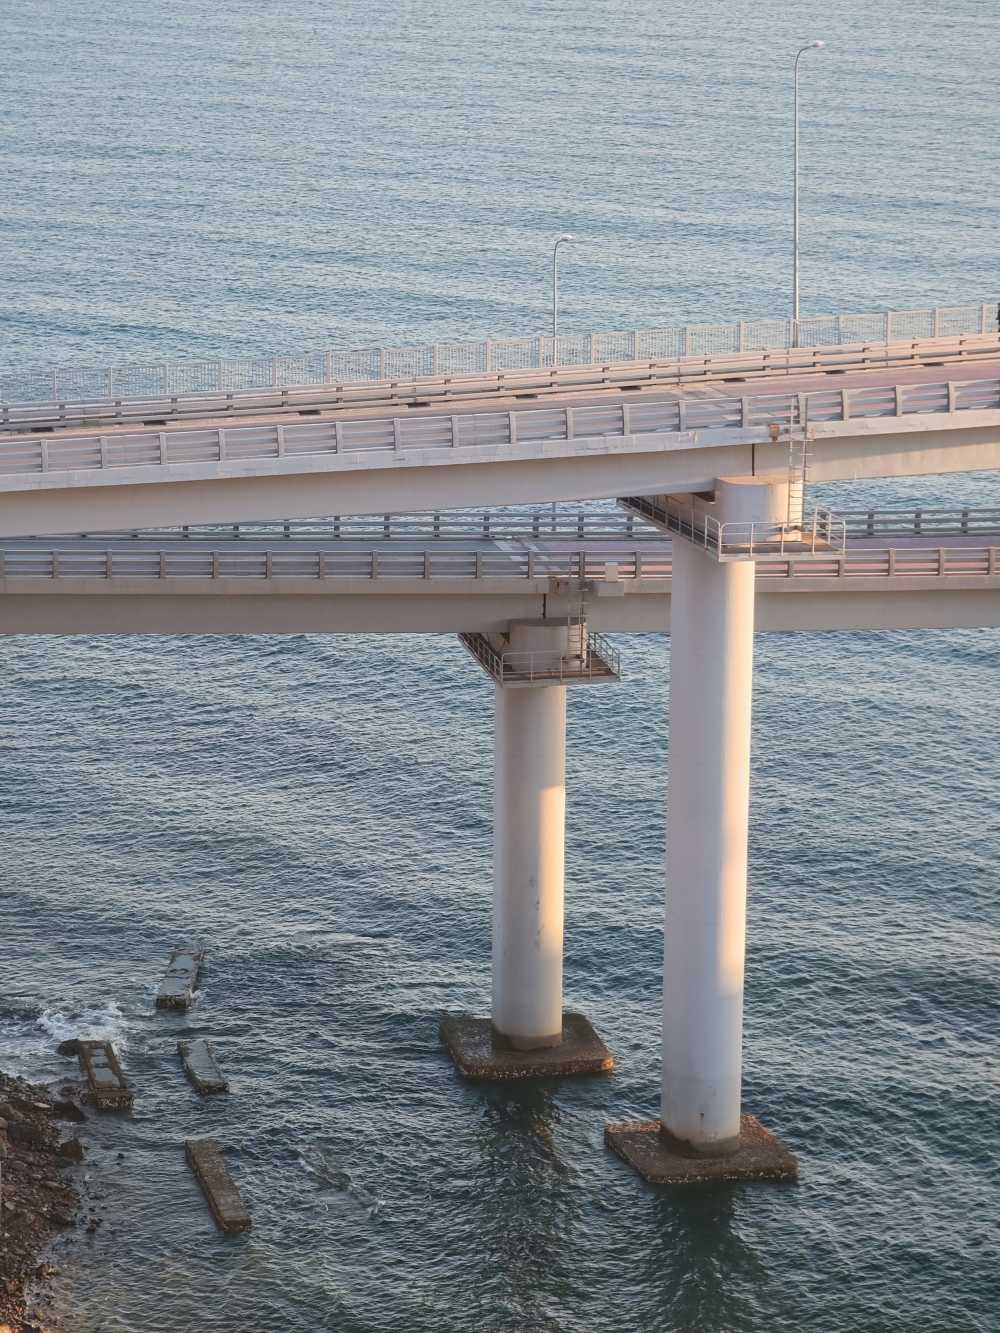 大连星海湾大桥